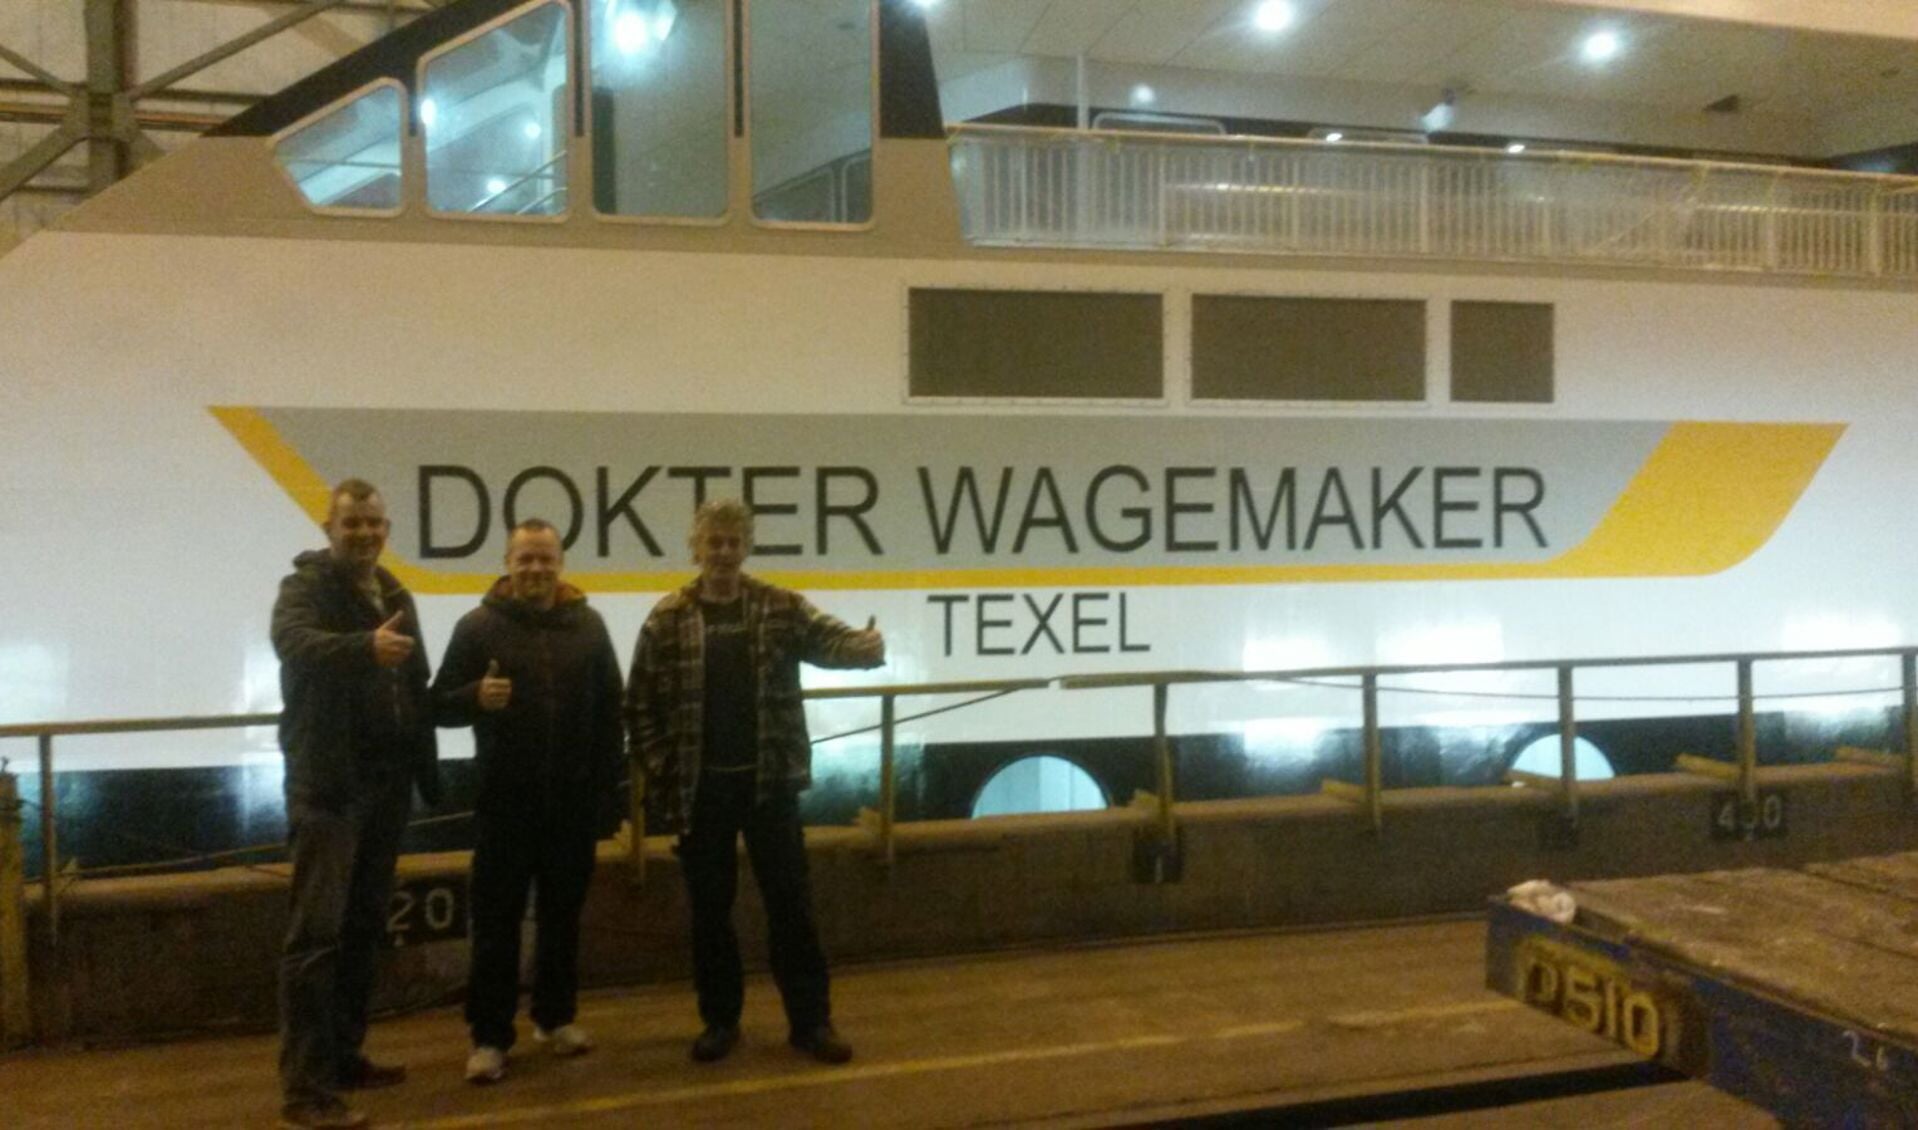 Foto van maandagochtend: er prijkt gewoon Dokter Wagemaker in plaats van Dokter Wagenmaker op de zijkant van de boot.